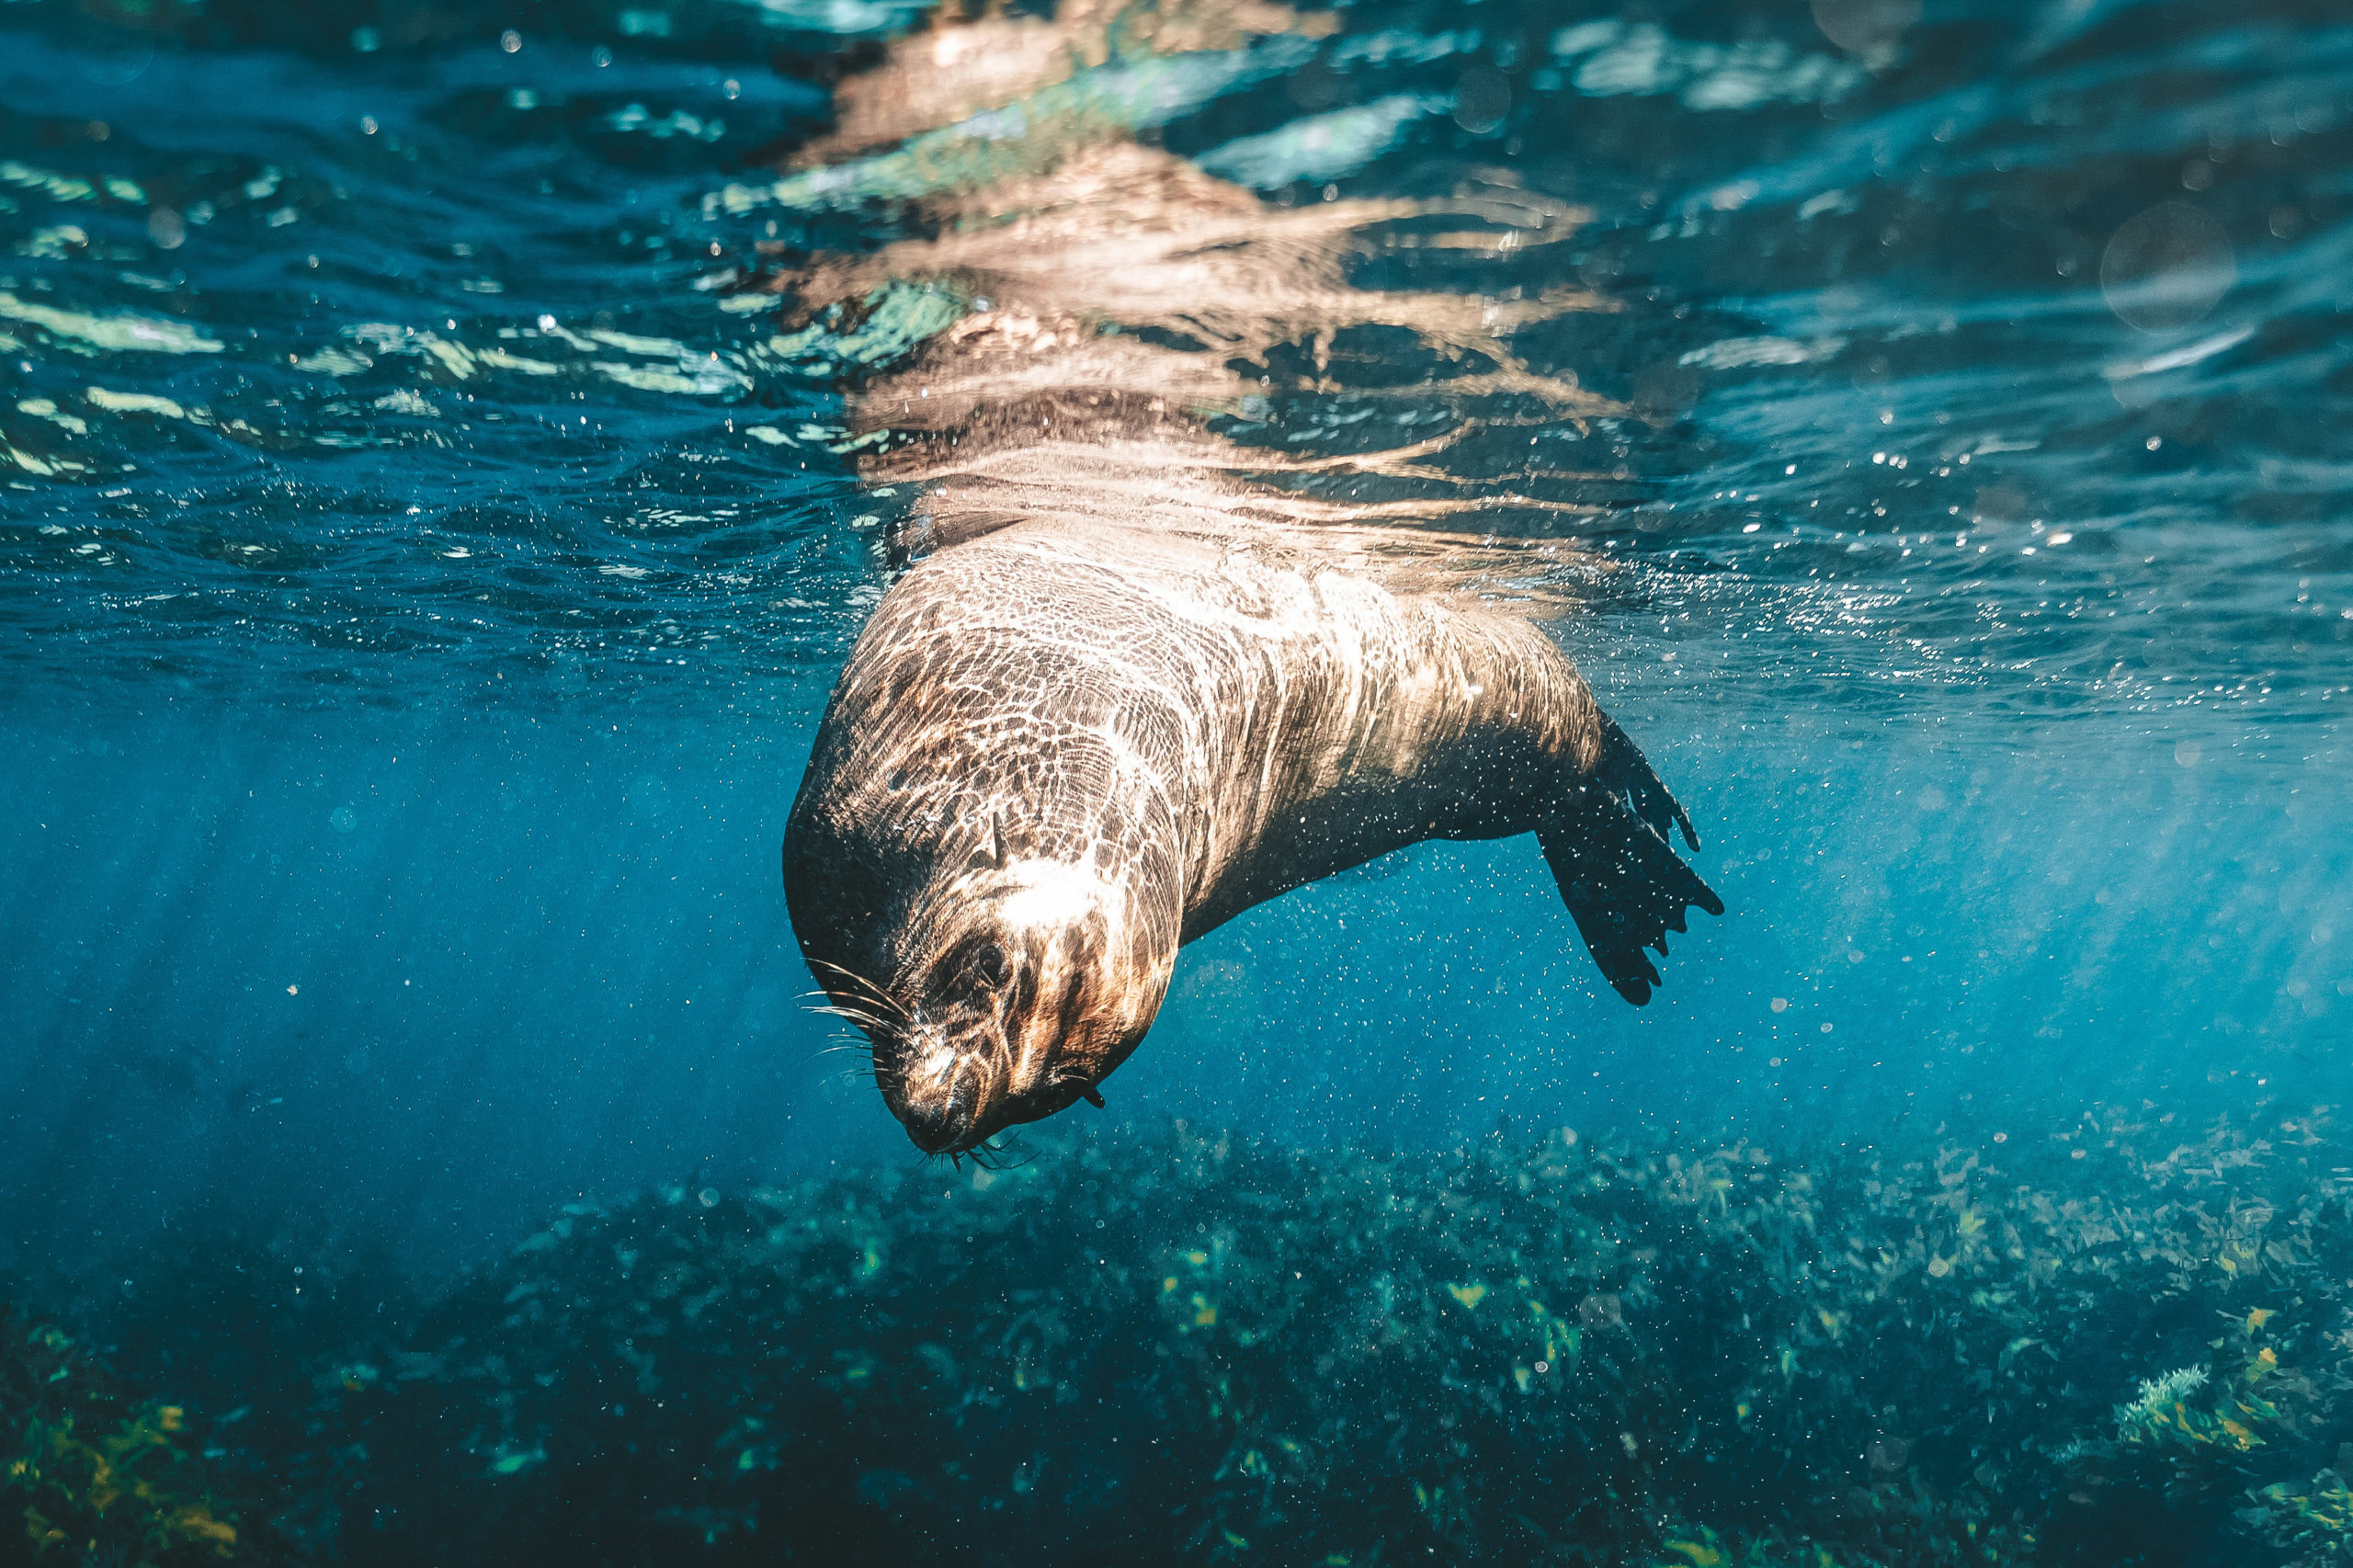 Seal swimming in ocean